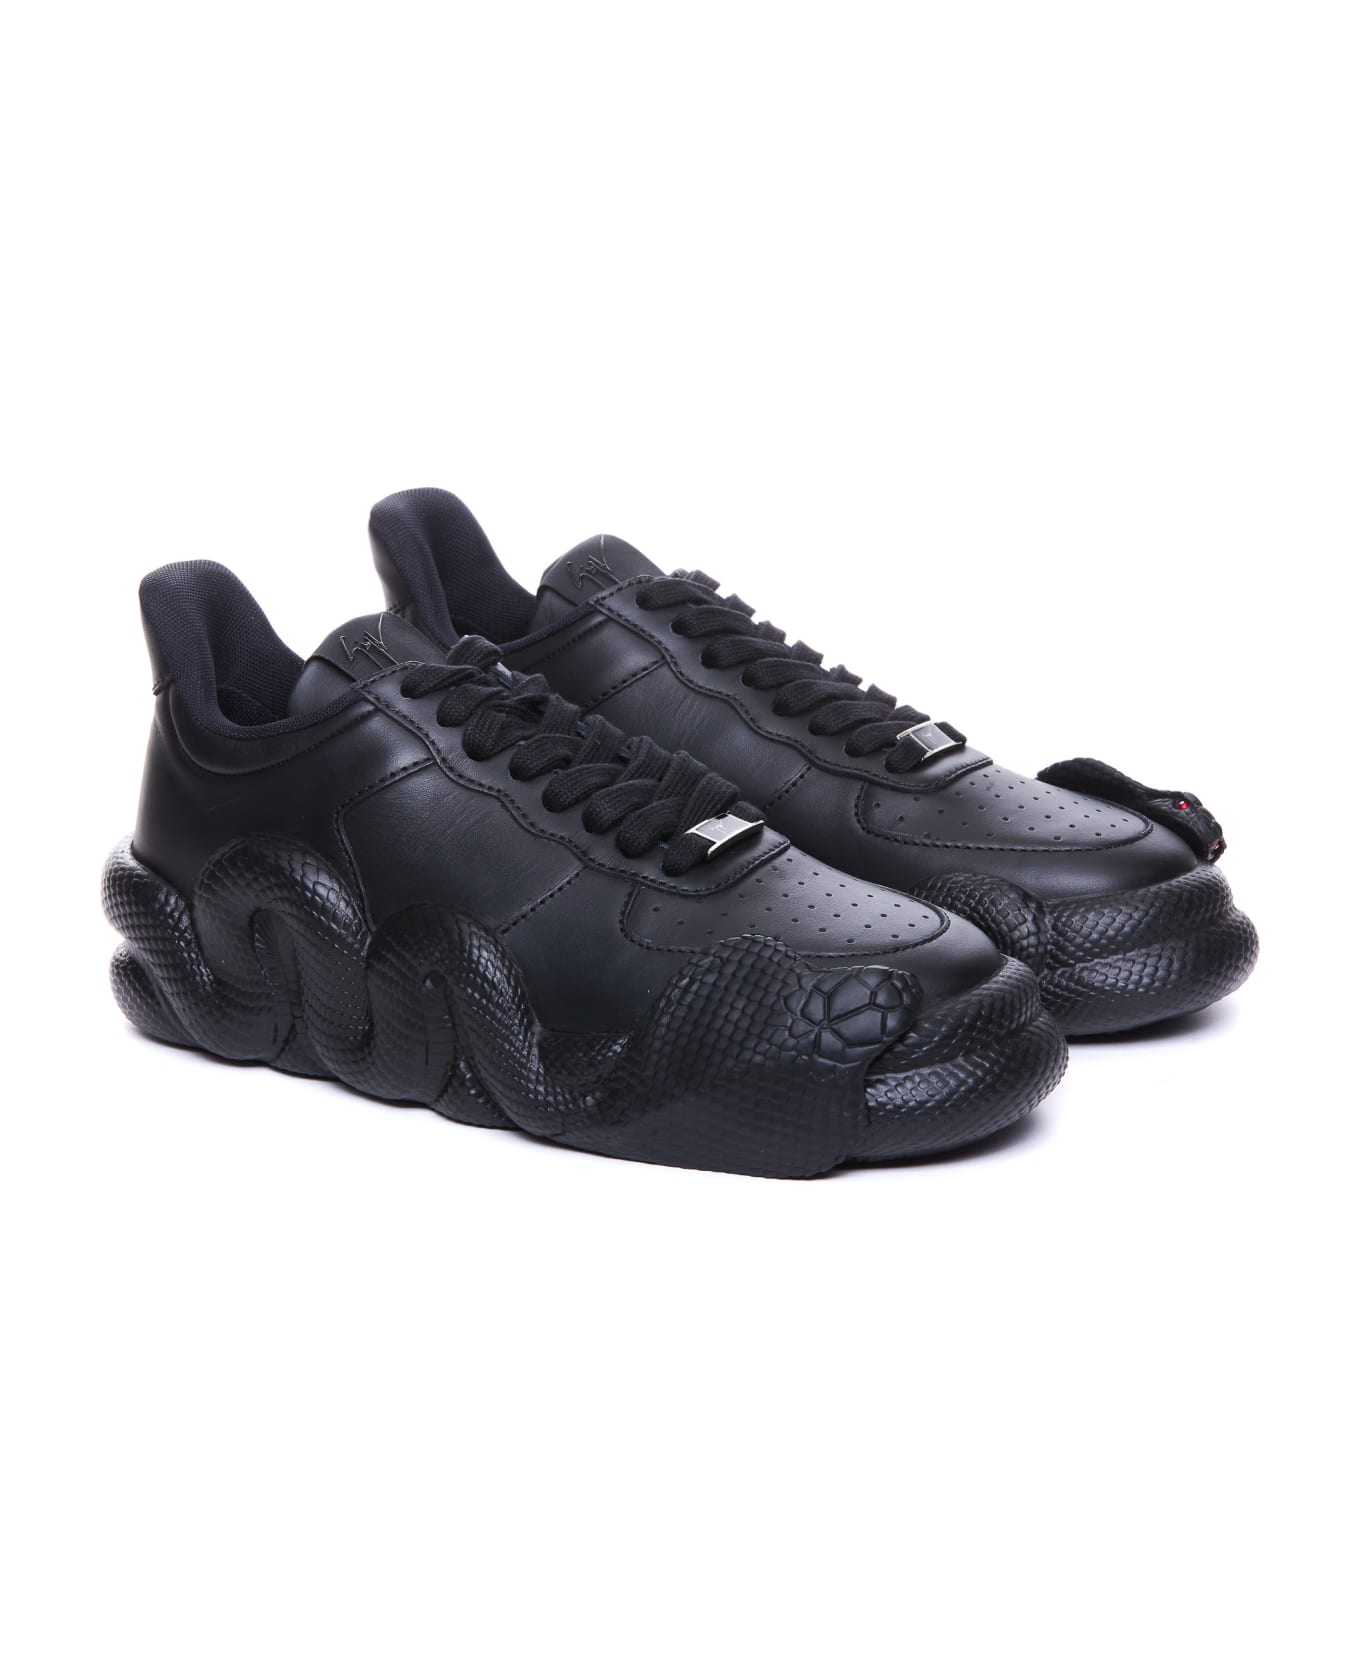 Giuseppe Zanotti Cobras Sneakers - Black